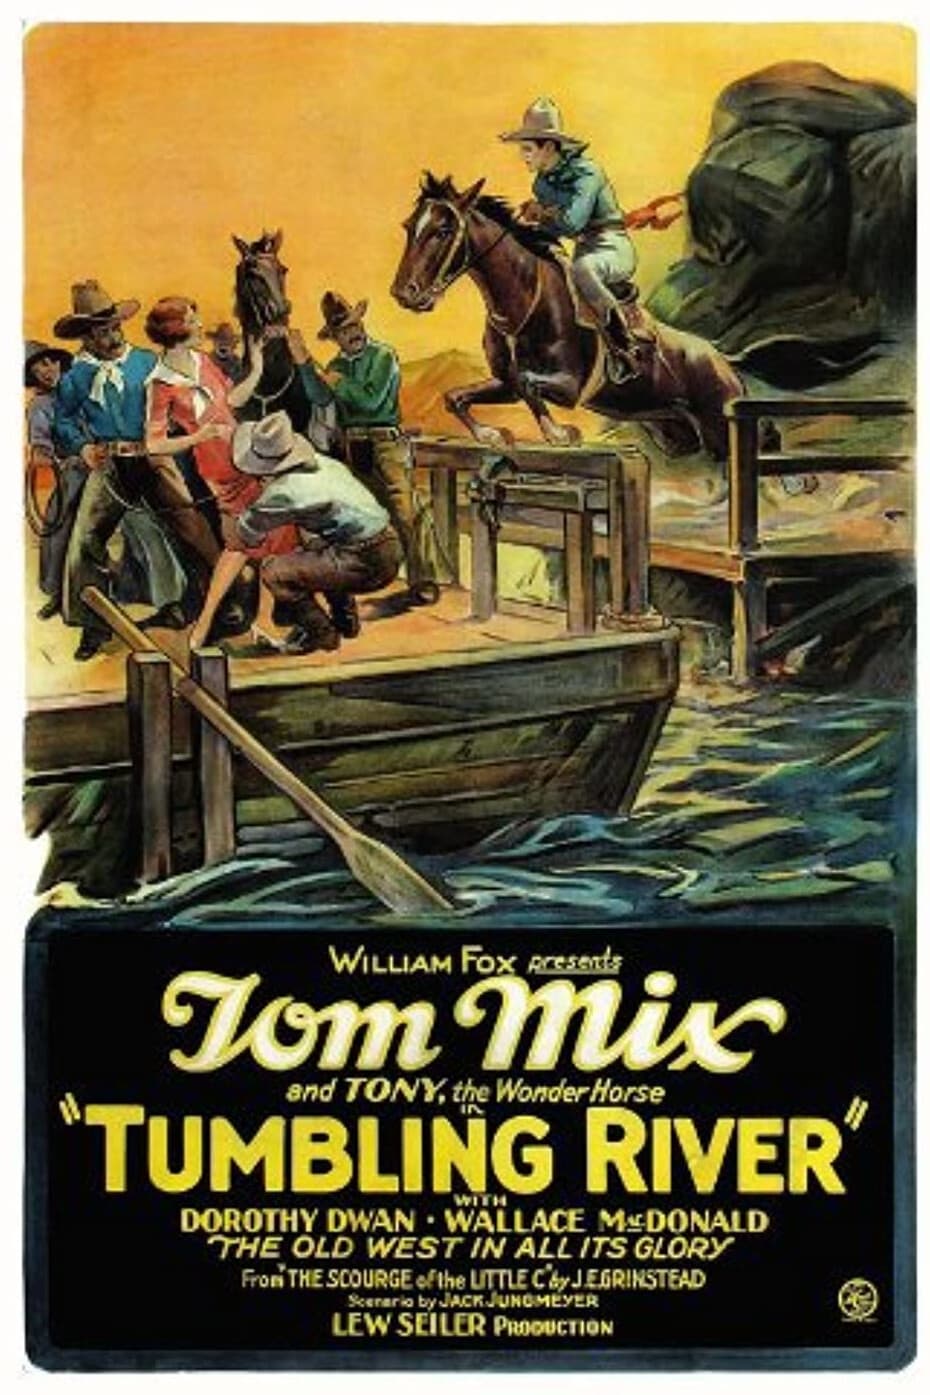 Tumbling River